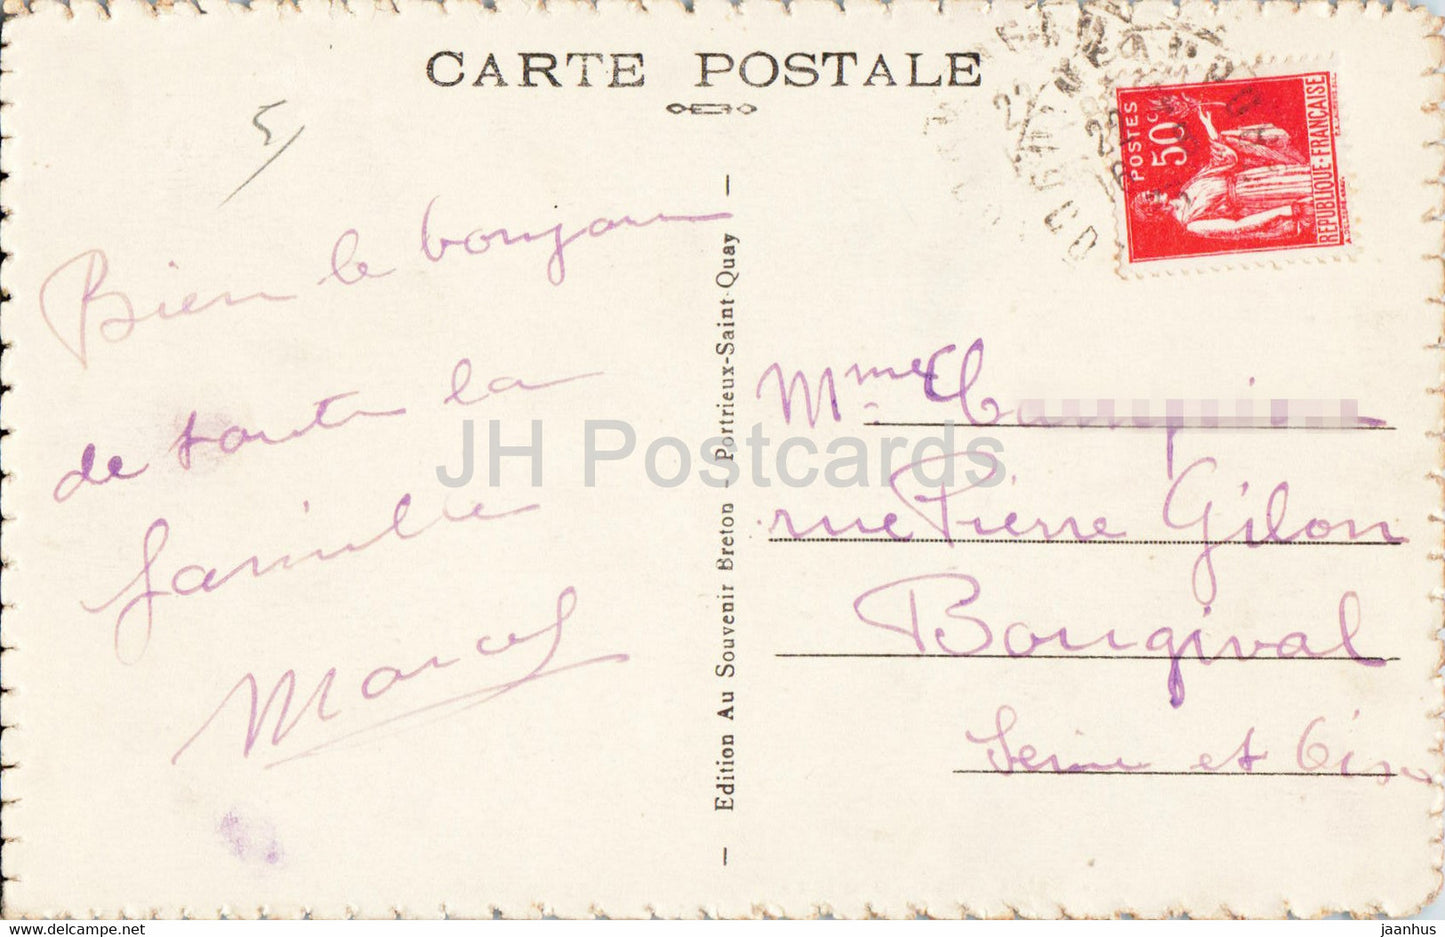 Saint Quay Portieux - Les Falaises de la Comtesse - 77 - old postcard - France - used